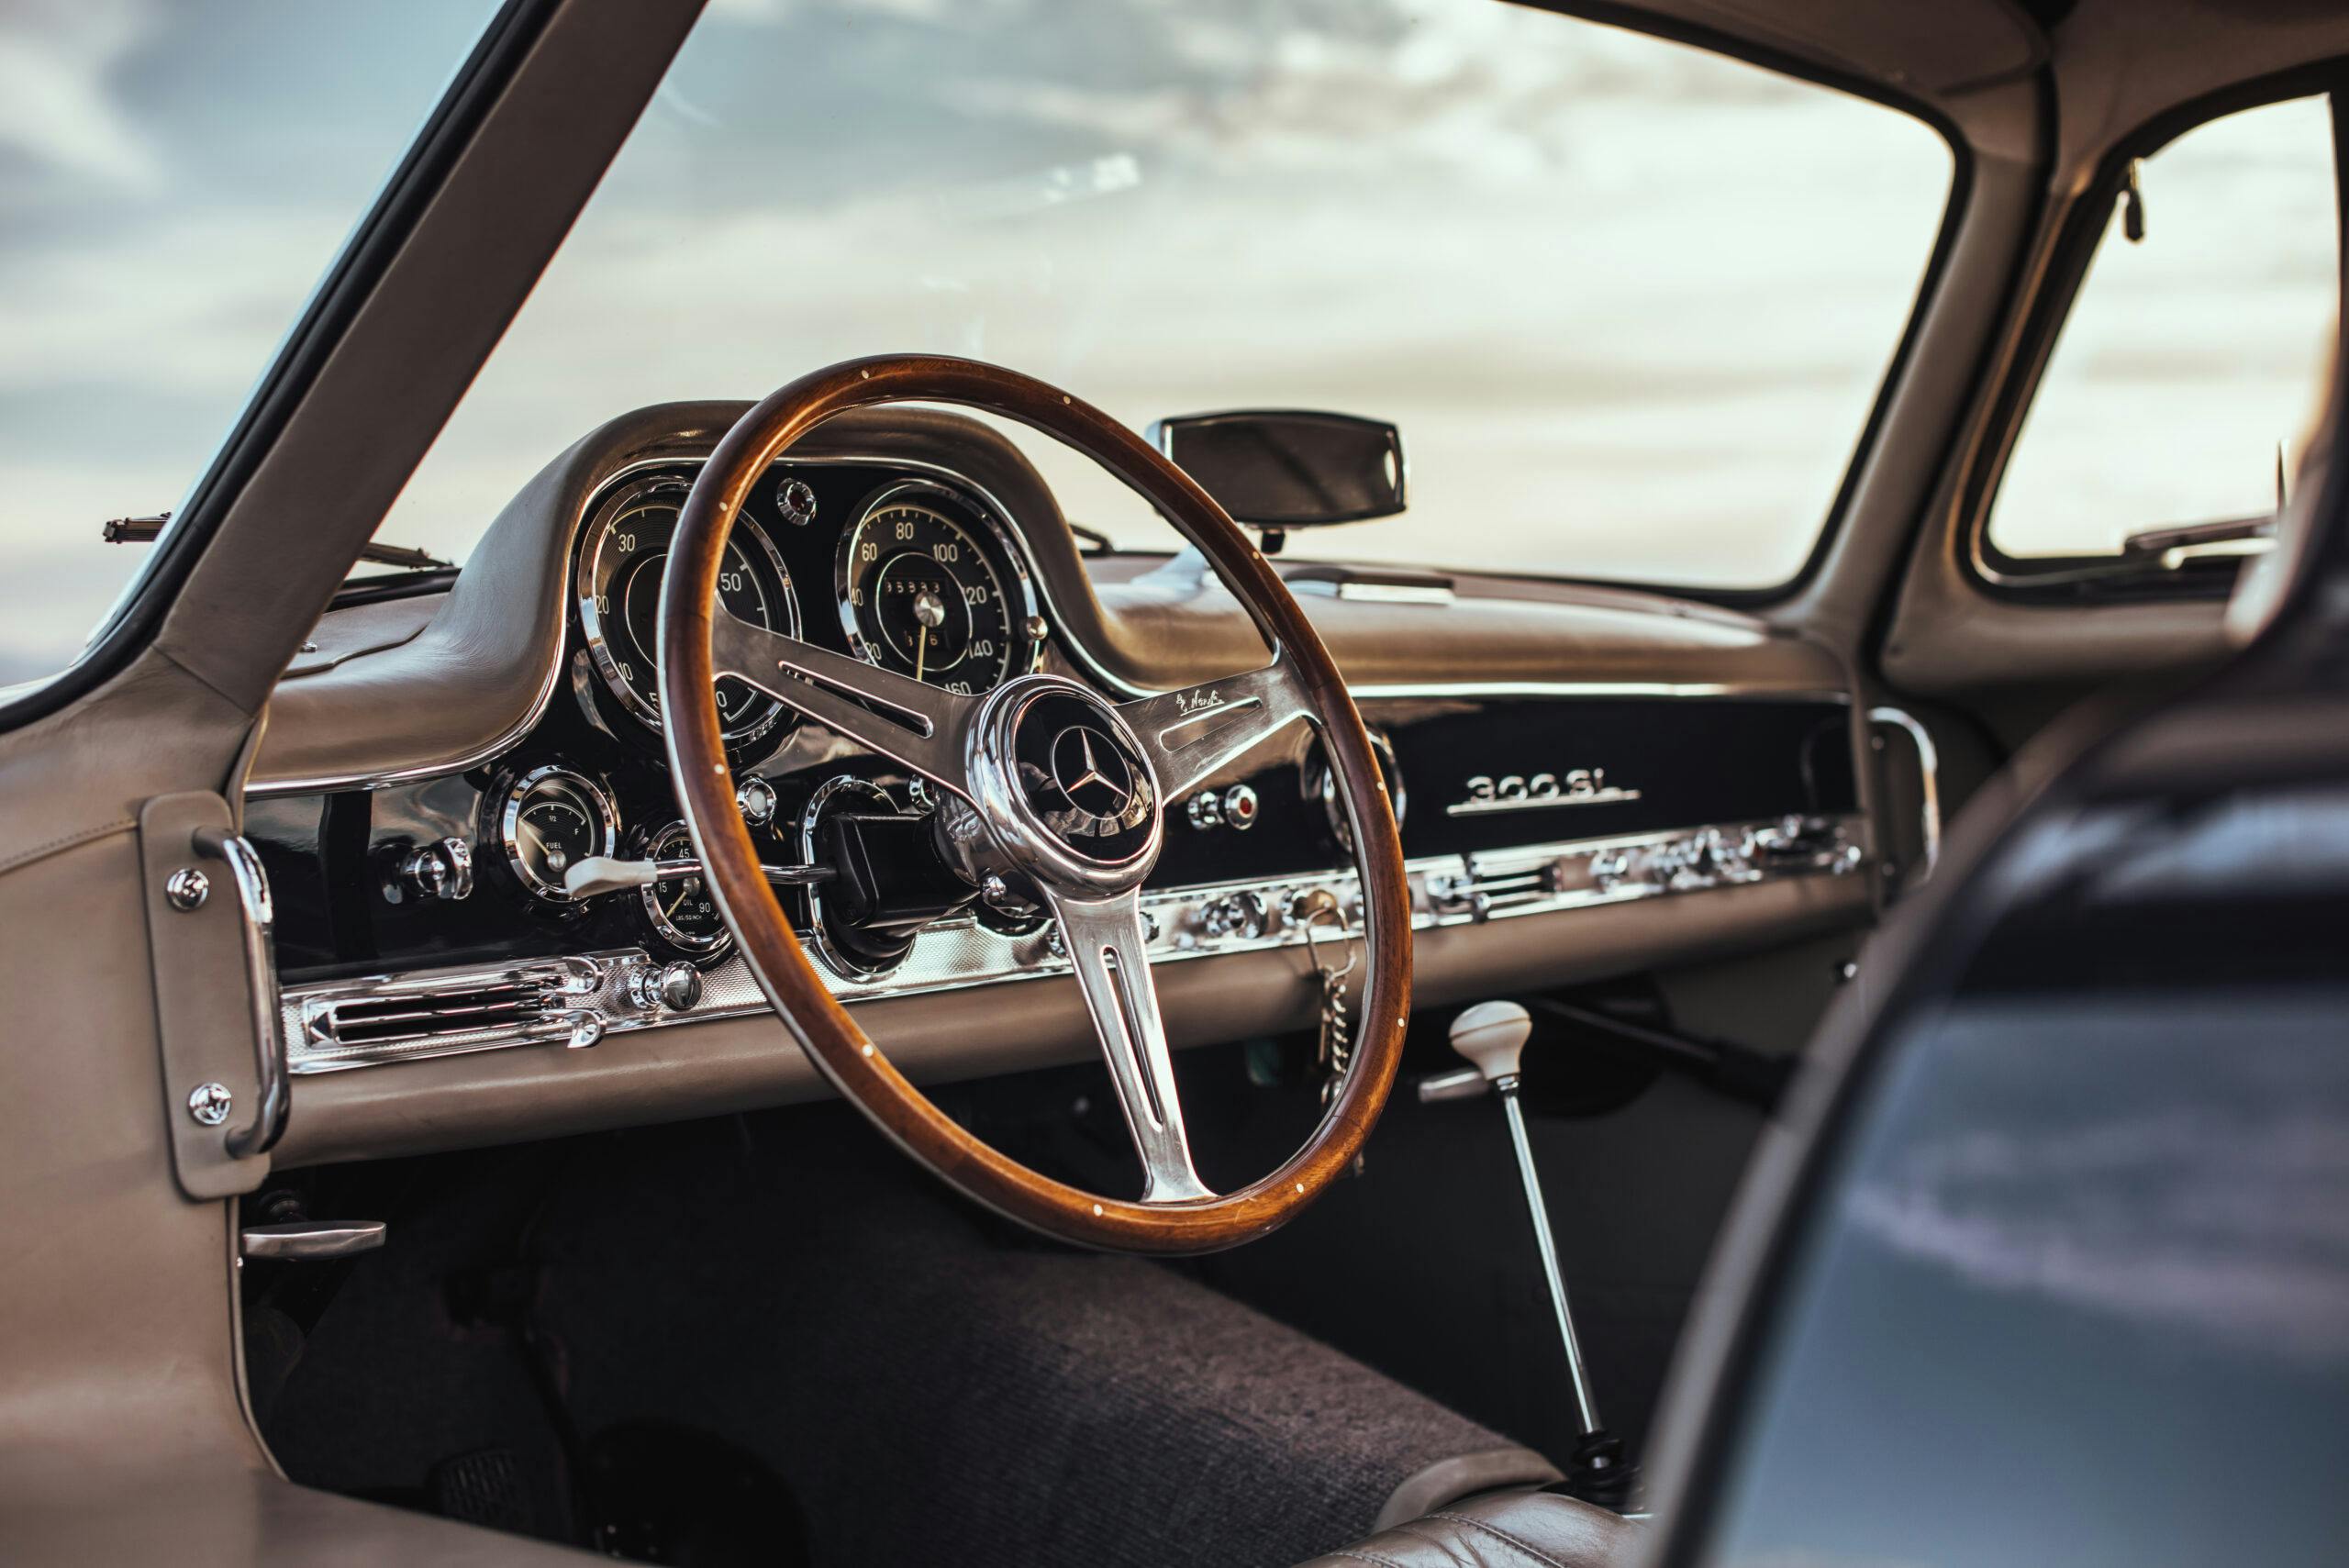 1955 Mercedes-Benz 300SL Gullwing interior